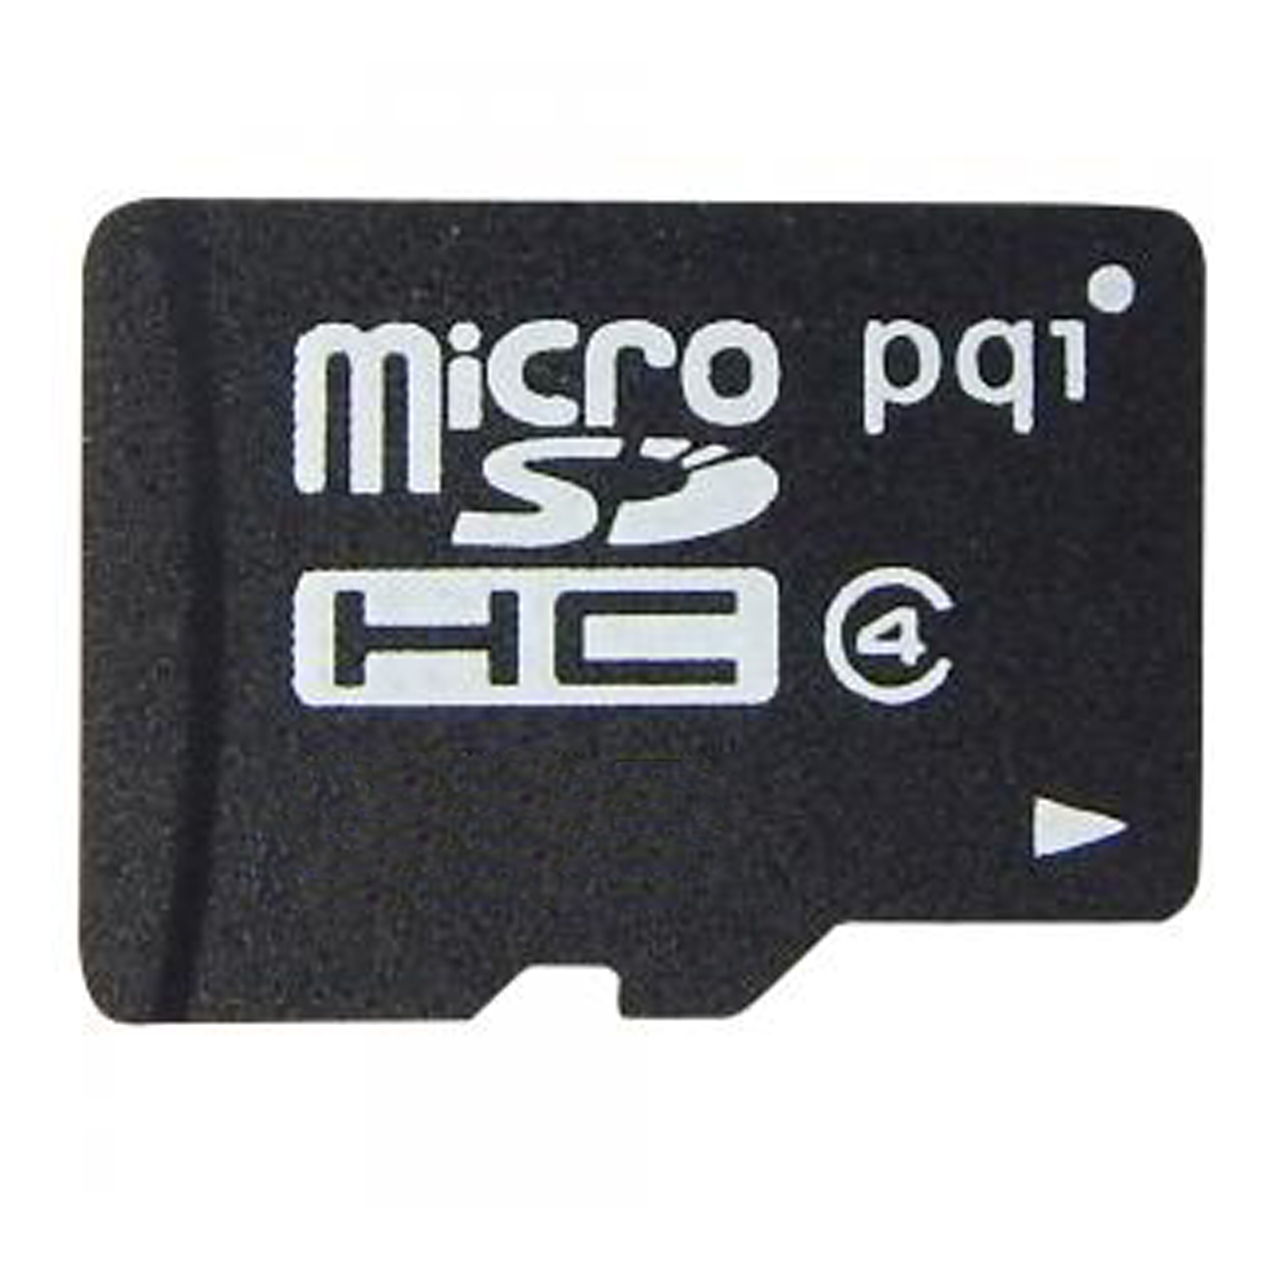 کارت حافظه microSDHC پی کیو آی کلاس 4 استاندارد SDA ظرفیت 4 گیگابایت